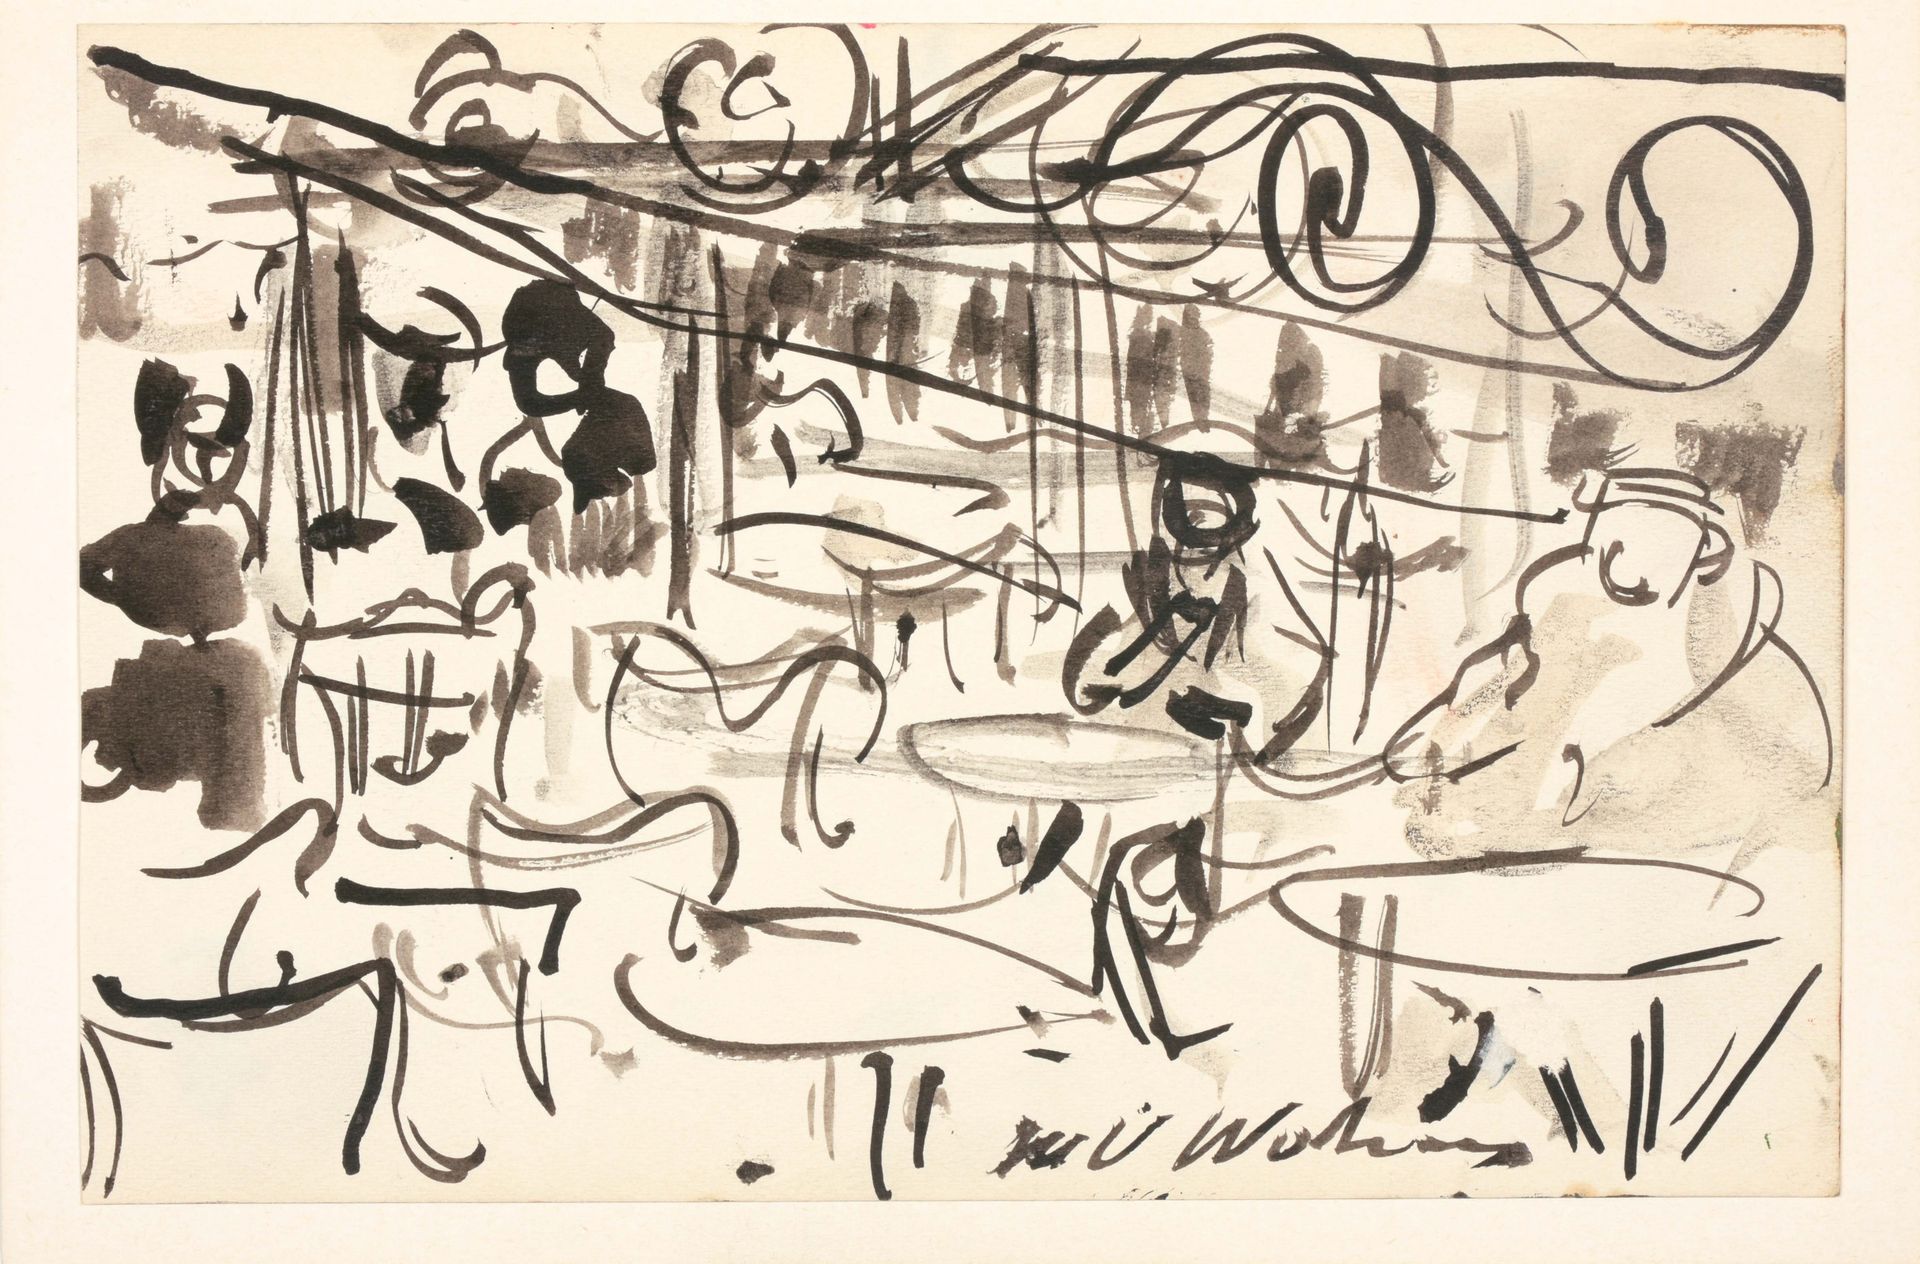 WOLVENS, H.V. (1896-1977) Terrazze con tafelle e stoelen

Tekening (14 x 20,5 cm&hellip;